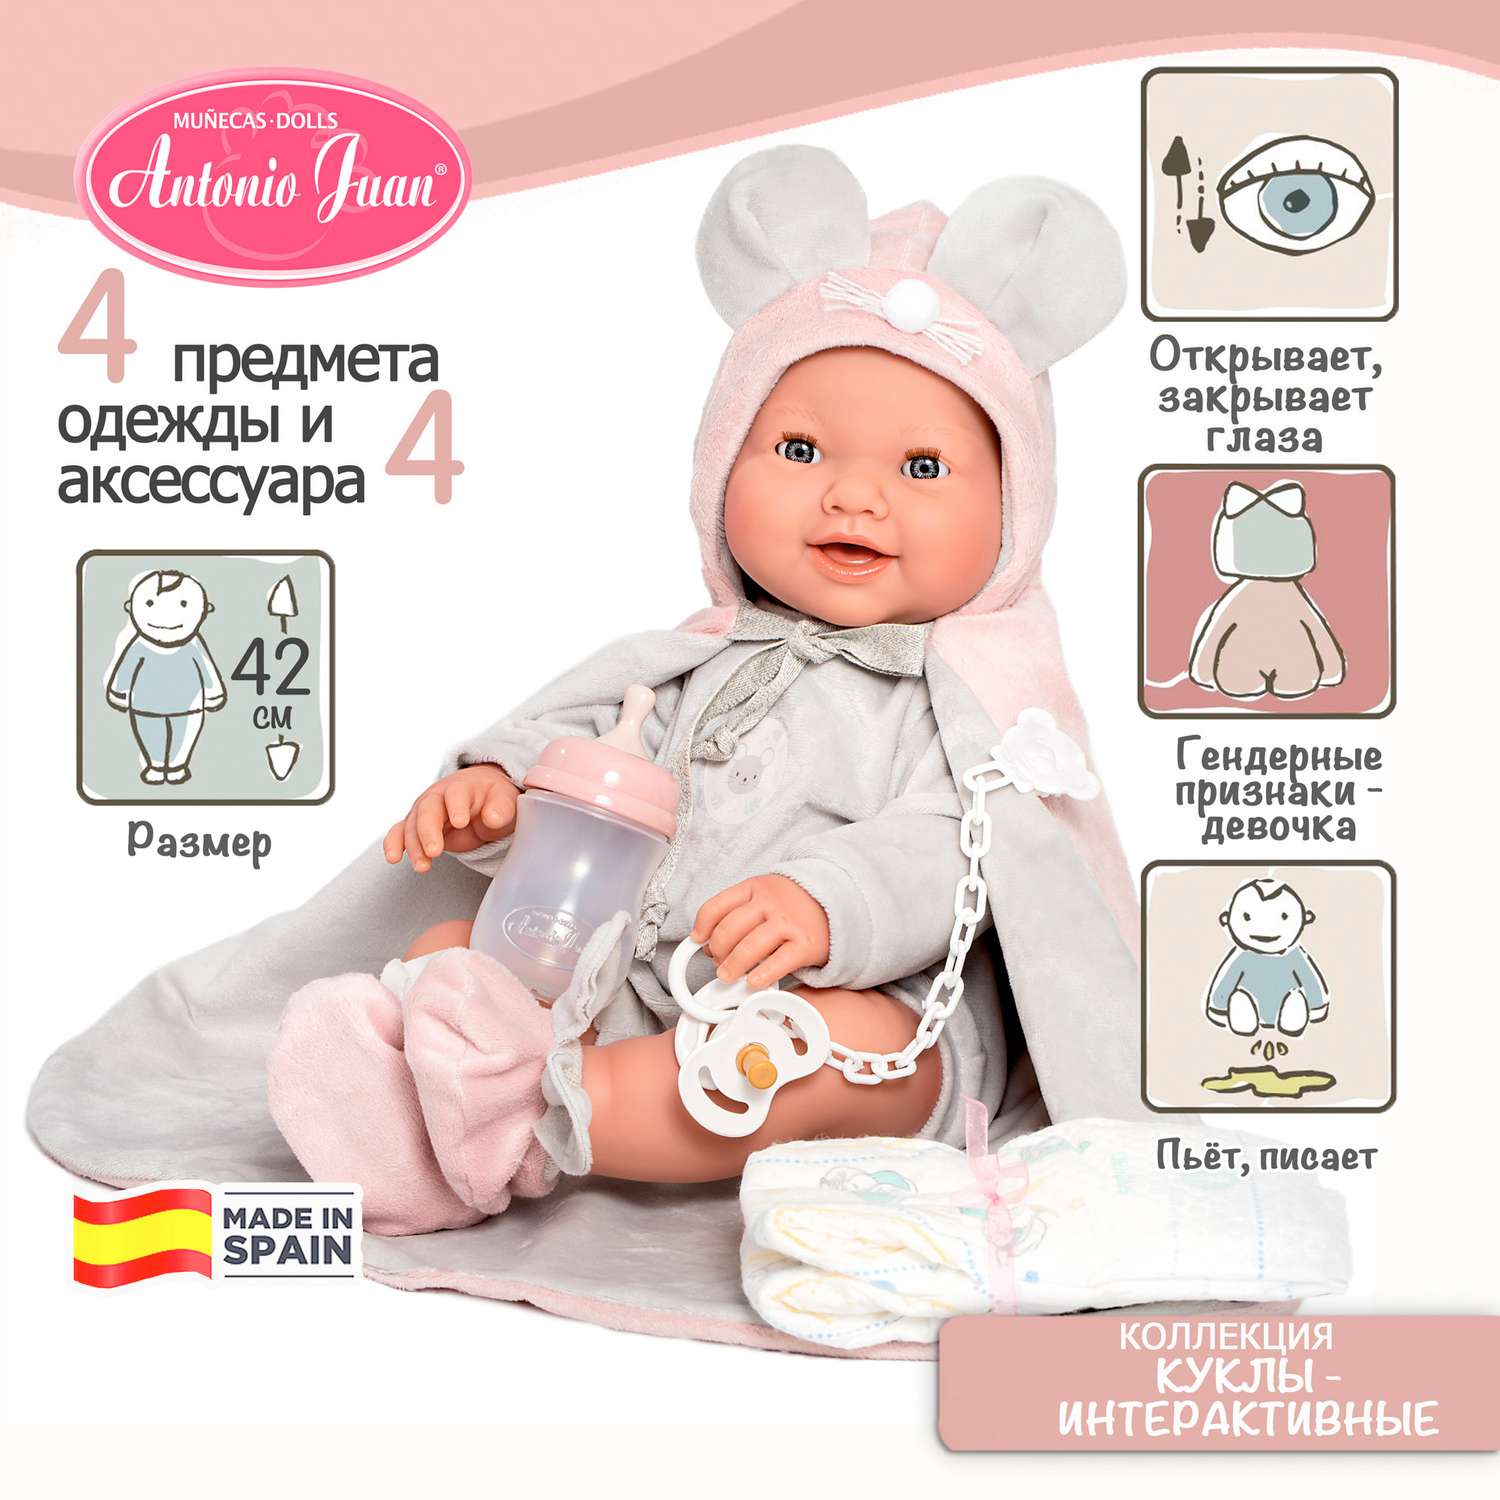 Купить интерактивные куклы в интернет магазине игрушек slep-kostroma.ru